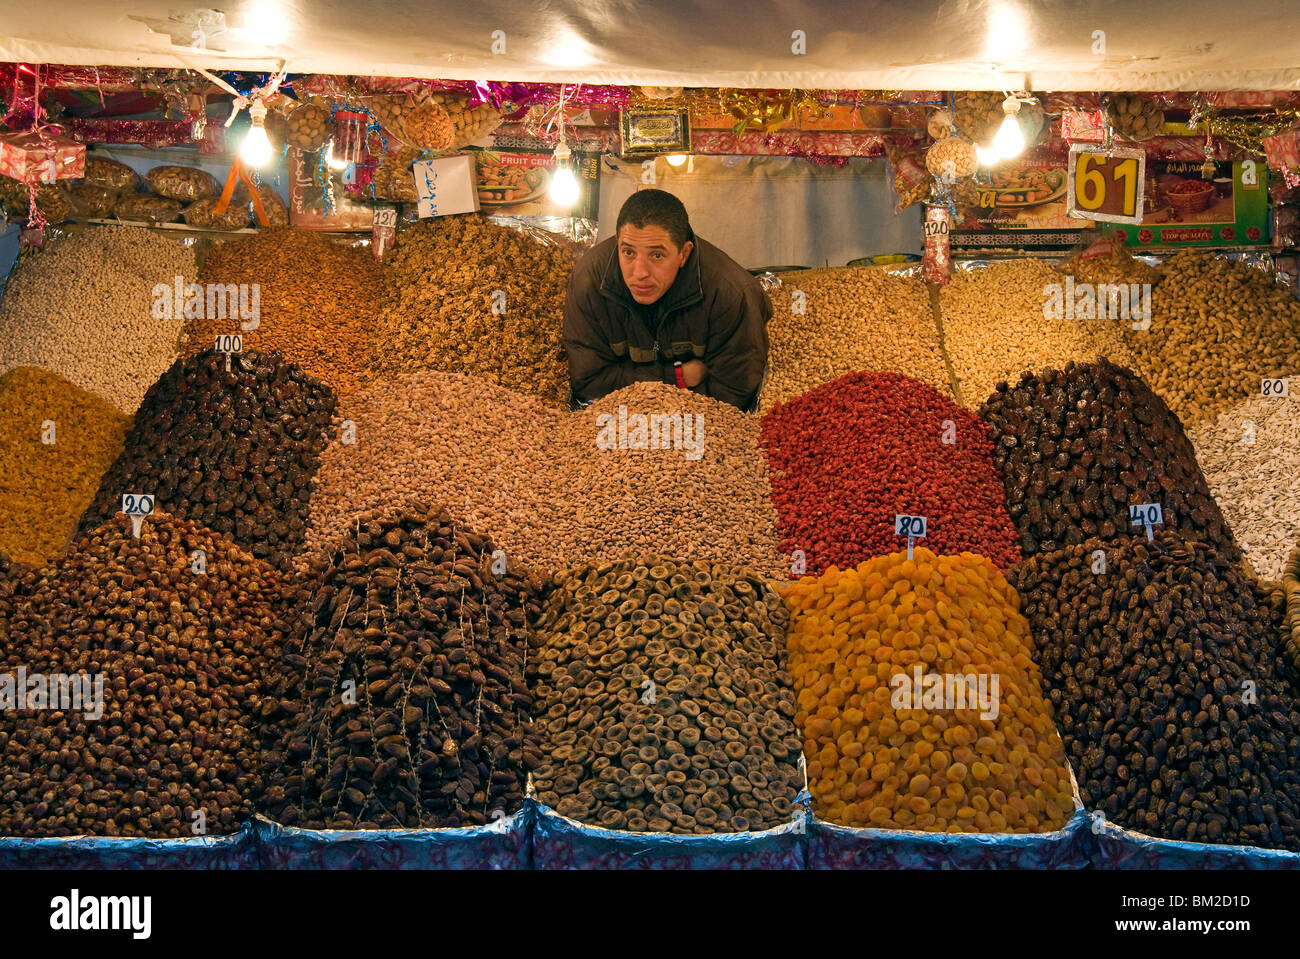 Vendedor de frutos secos, lugar Jemaa el Fna (Djemaa el Fna), Marrakech (Marrakech, Marruecos) Foto de stock